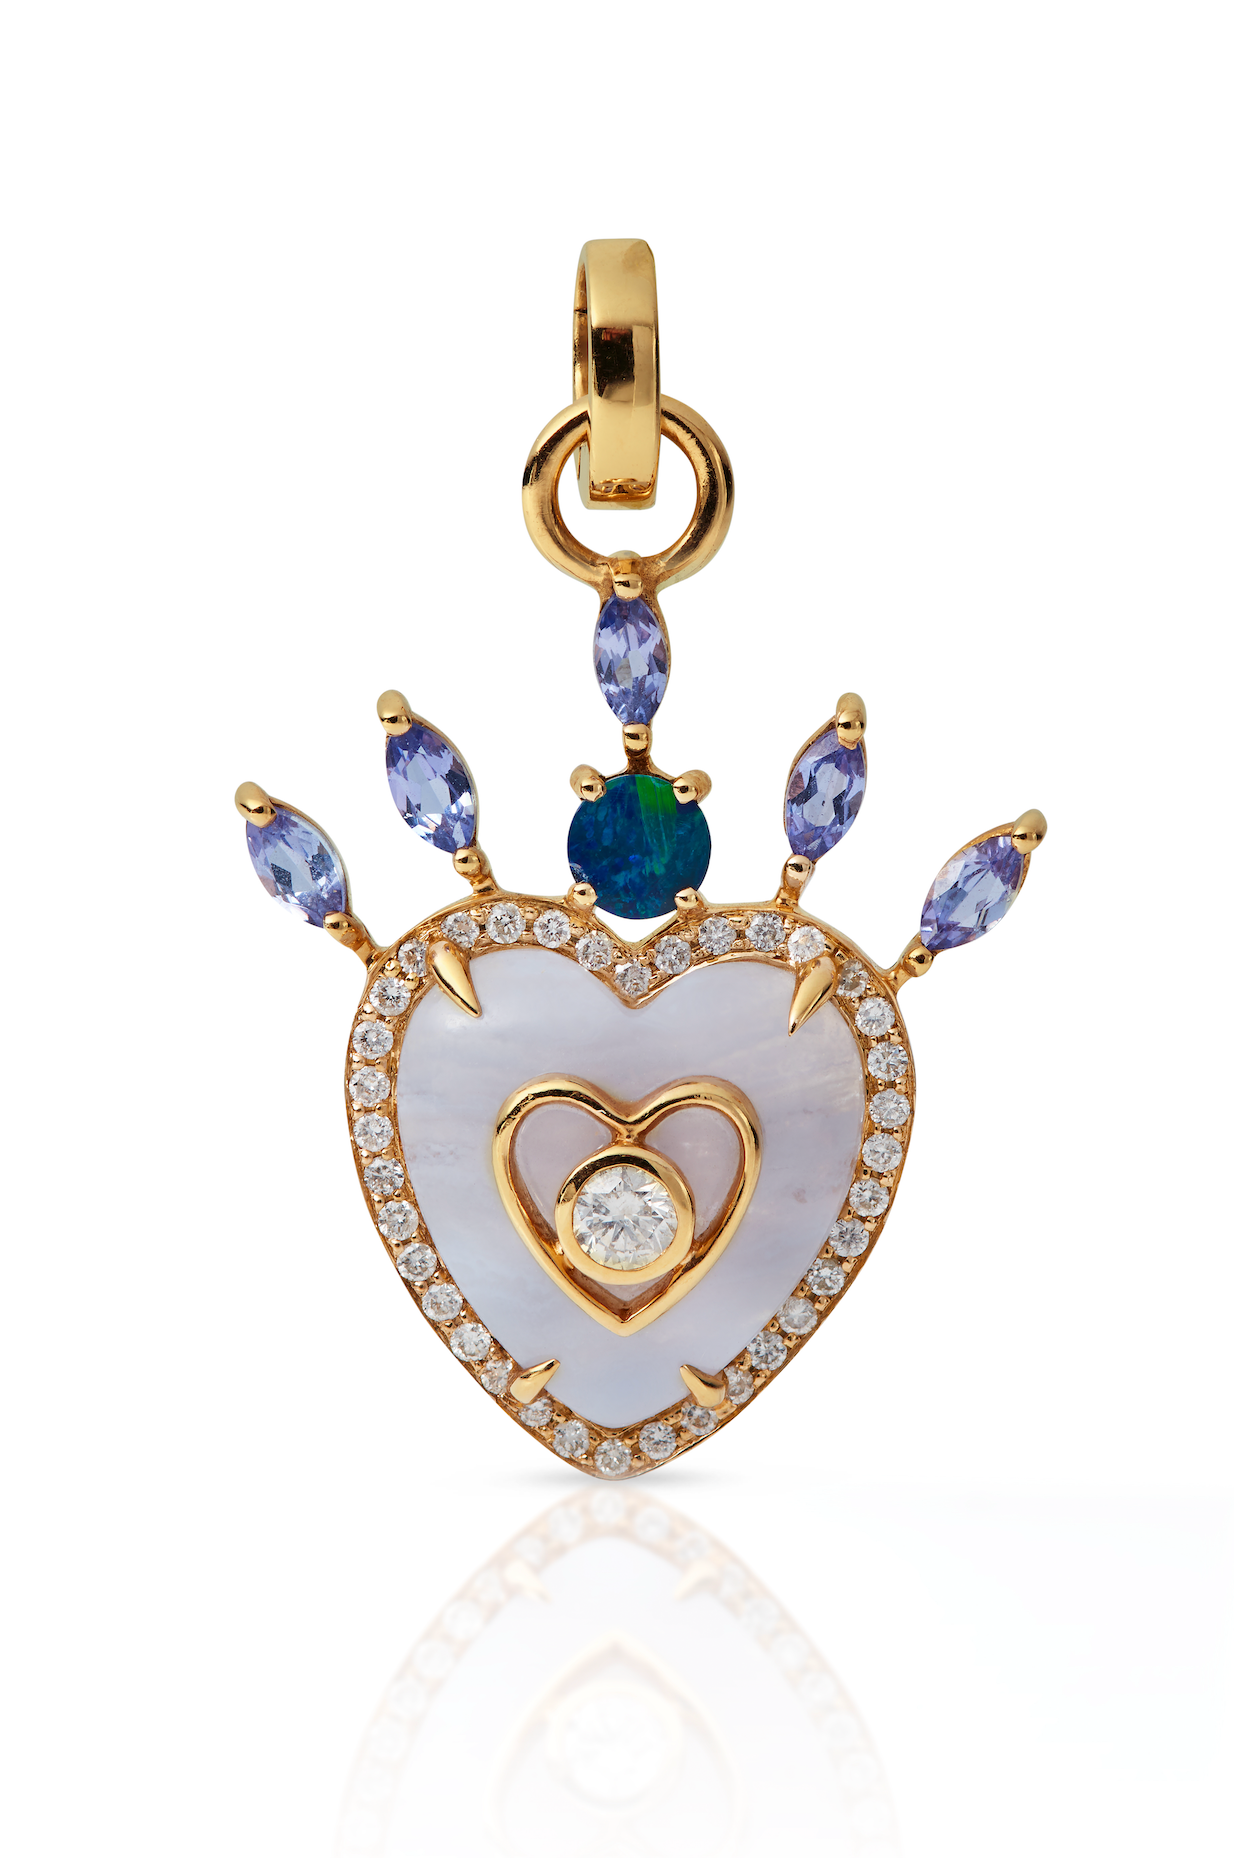 Queen of Hearts Pendant